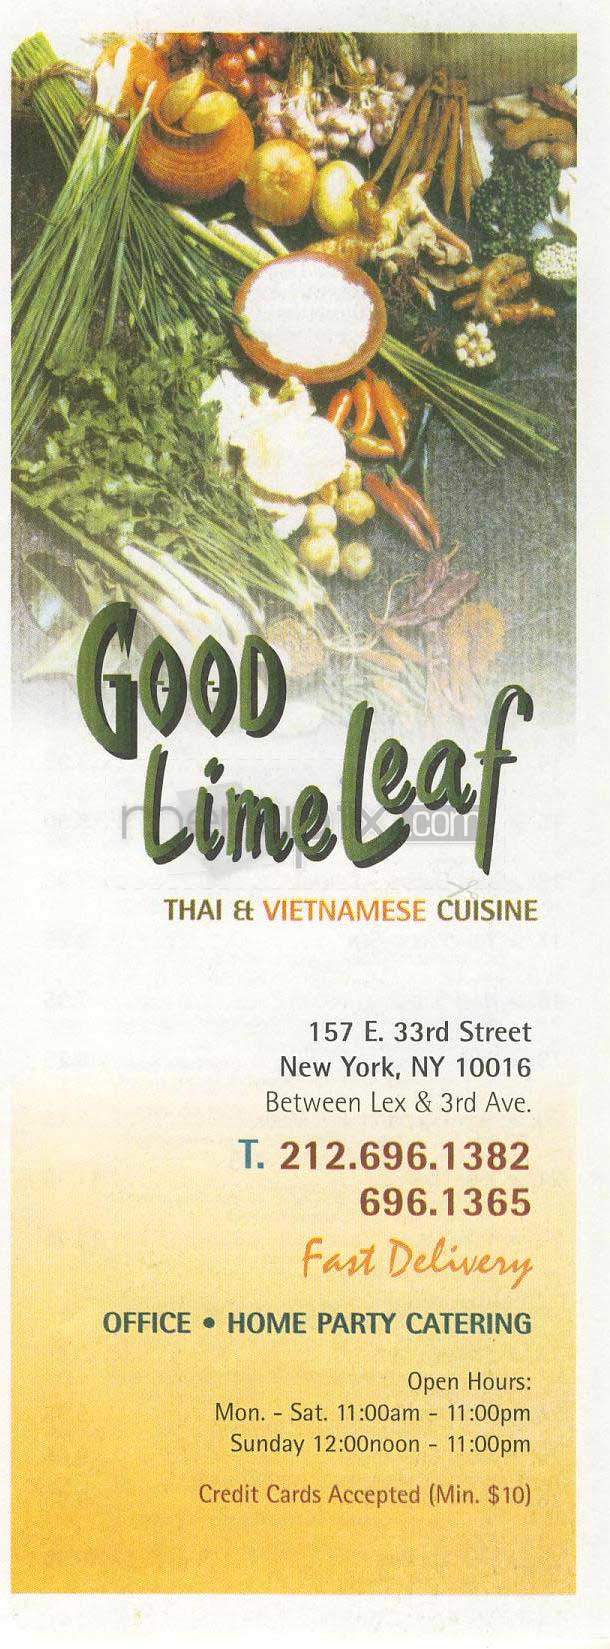 /305908/Good-Lime-Leaf-New-York-NY - New York, NY